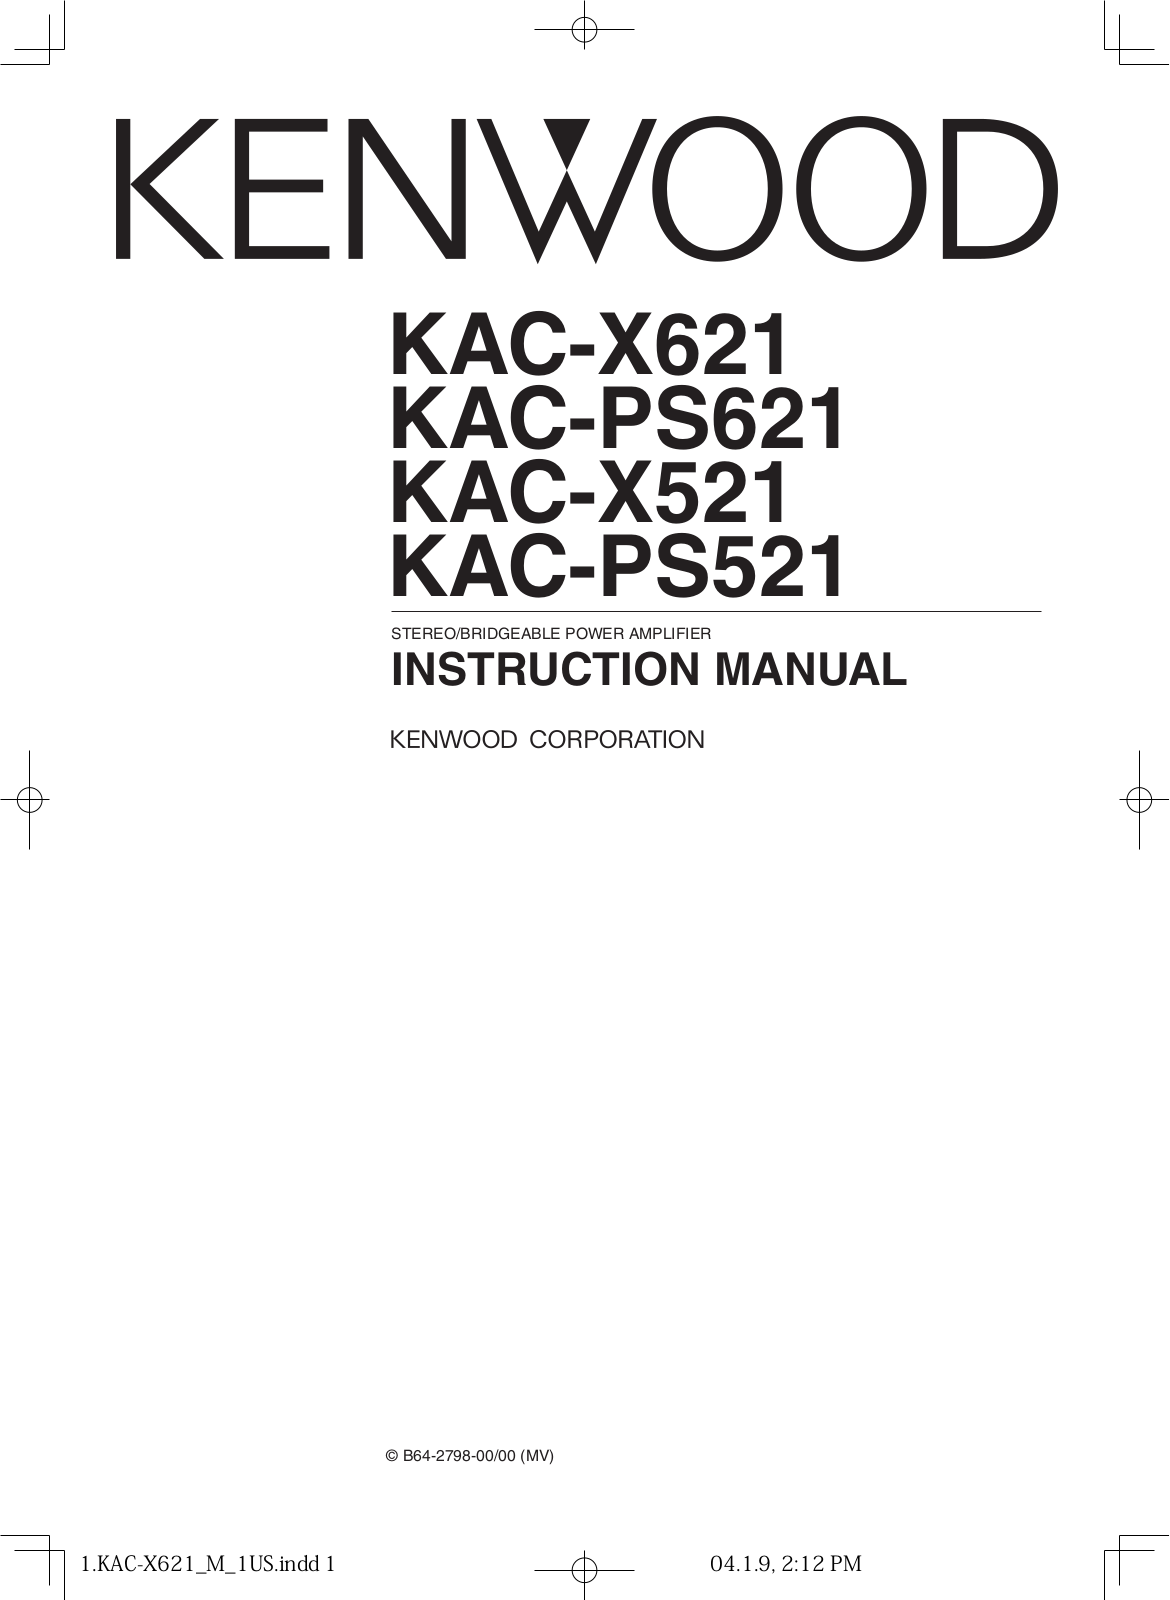 Kenwood KAC-PS521, KAC-PS621, KAC-X521 Instruction Manual